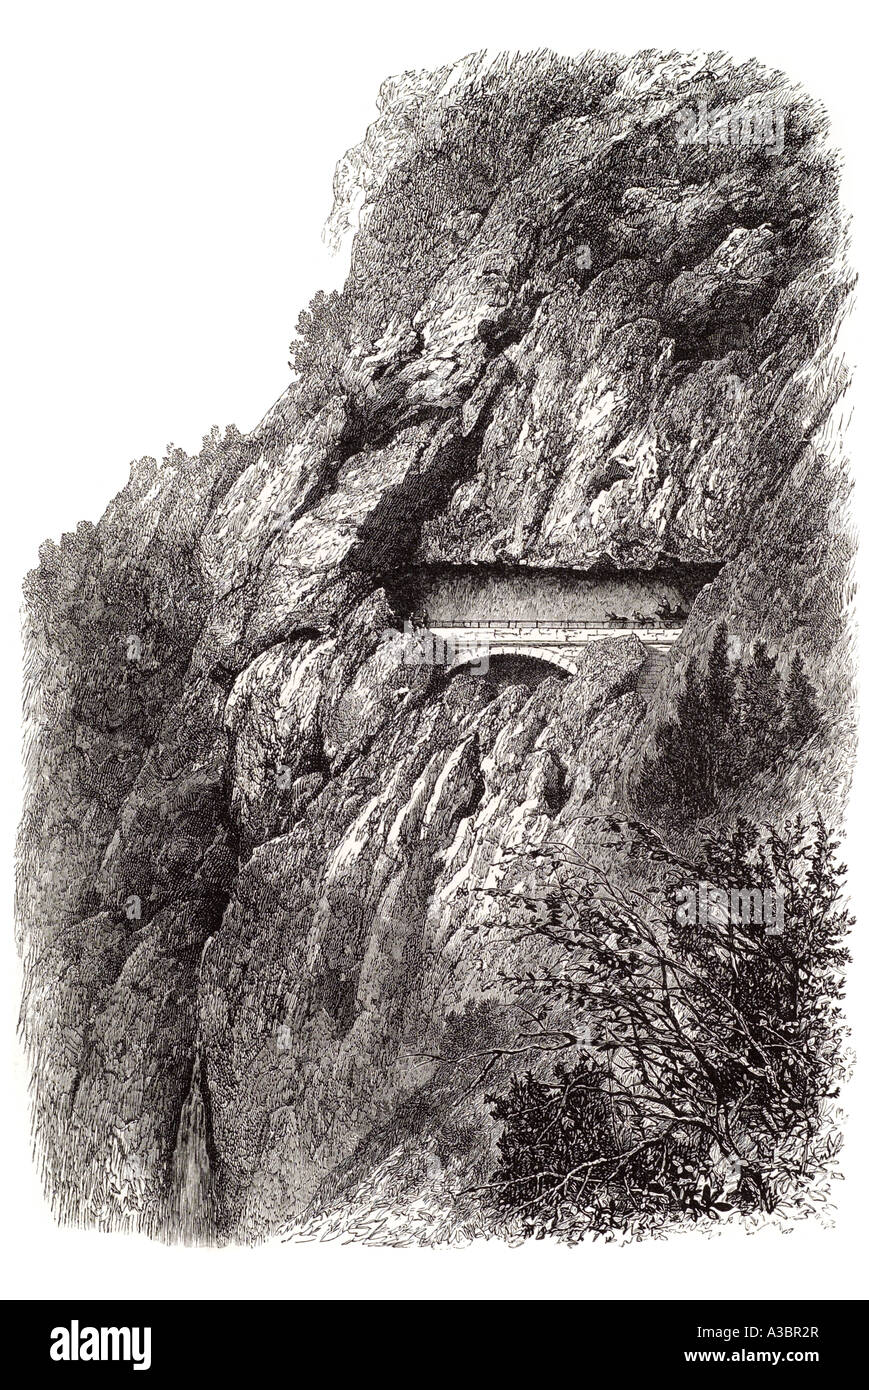 Confine val du van massiccio del Giura Francia regione francese della scarpata Comte de travers road bridge tunnel cavallo cliff creux Switze svizzero Foto Stock